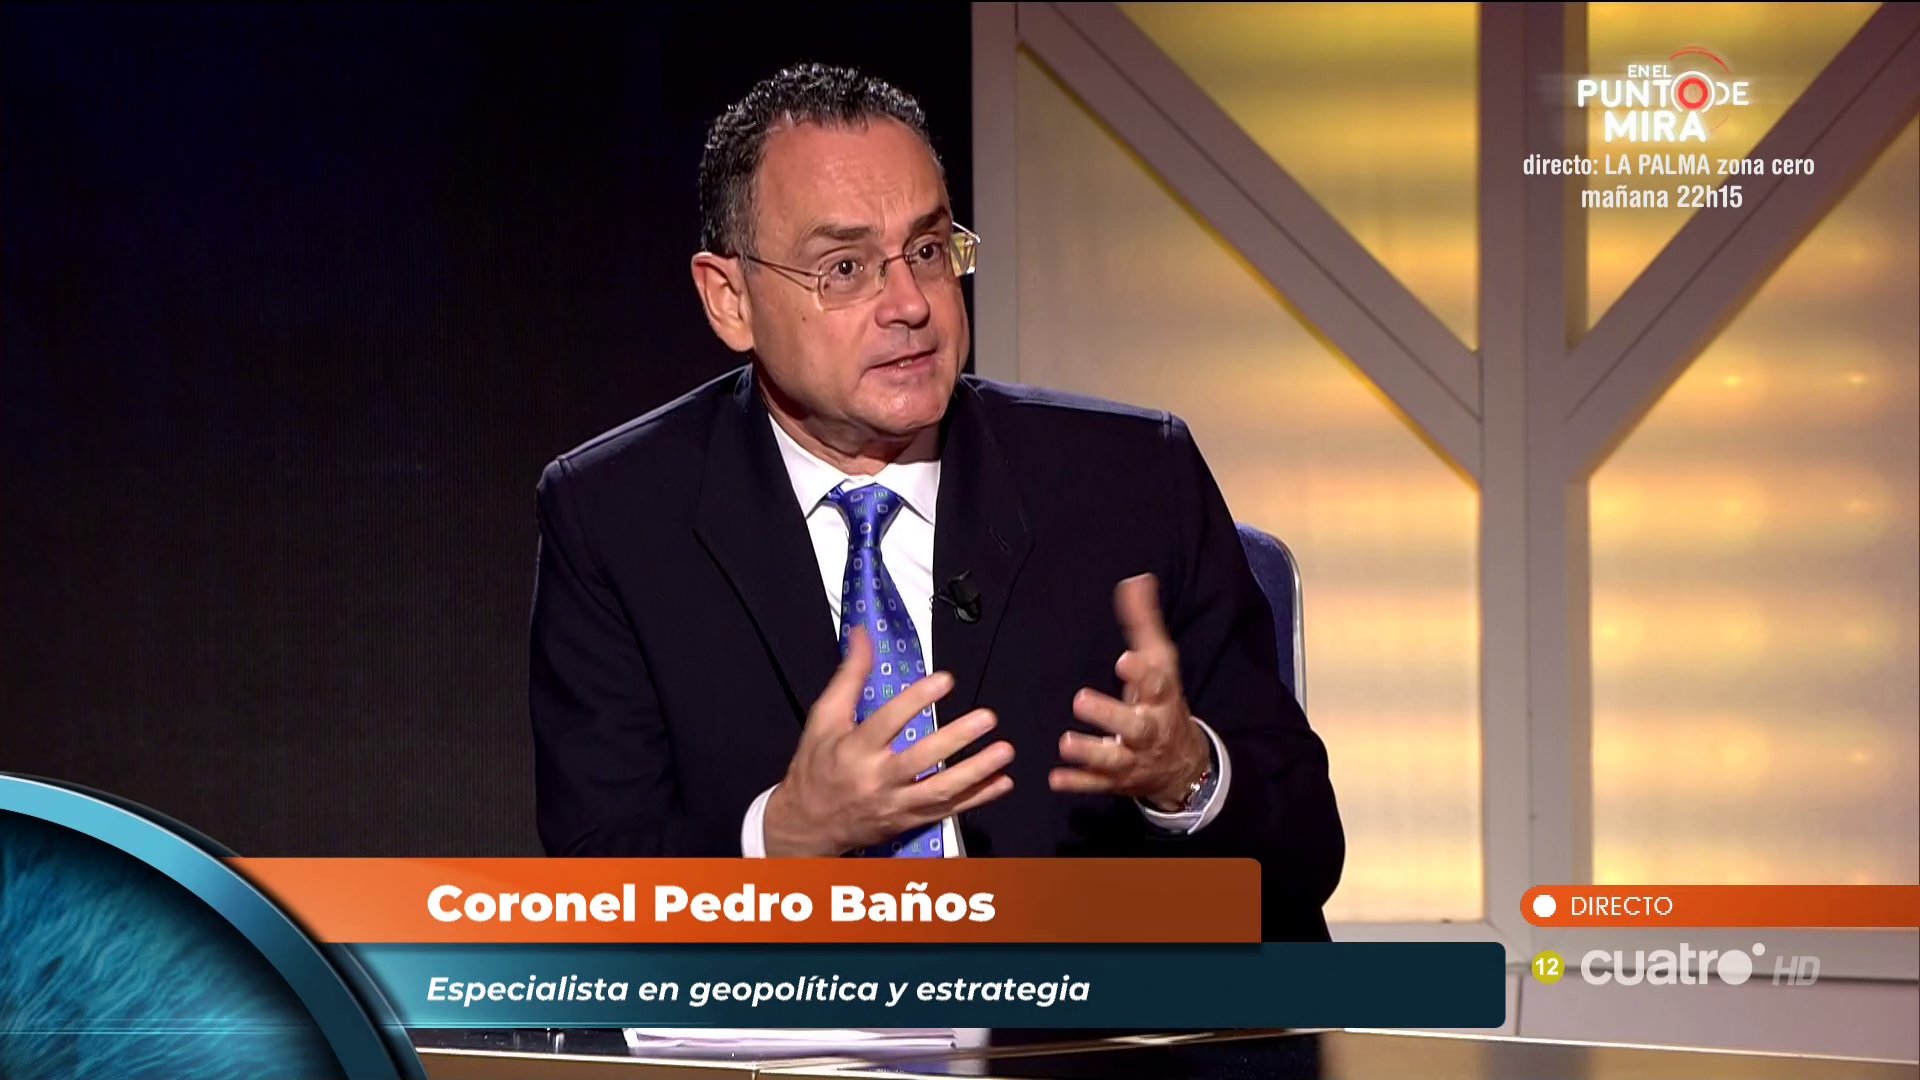 Iker Jiménez on X: Coronel Pedro Baños @geoestratego Especialista en  geopolítica y estrategia #Horizonte  / X